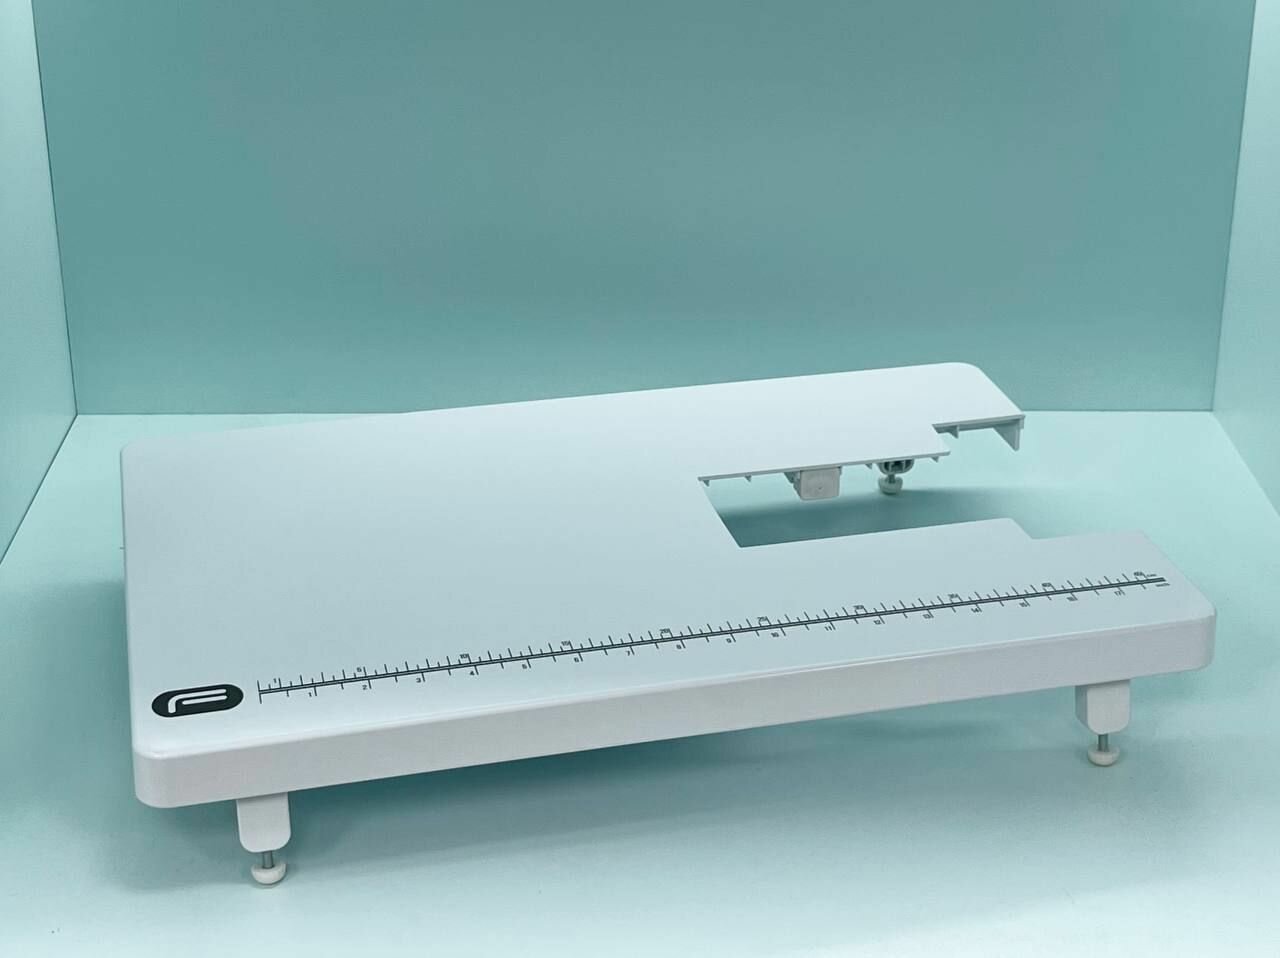 Приставной столик Format для швейной машины Necchi 1500